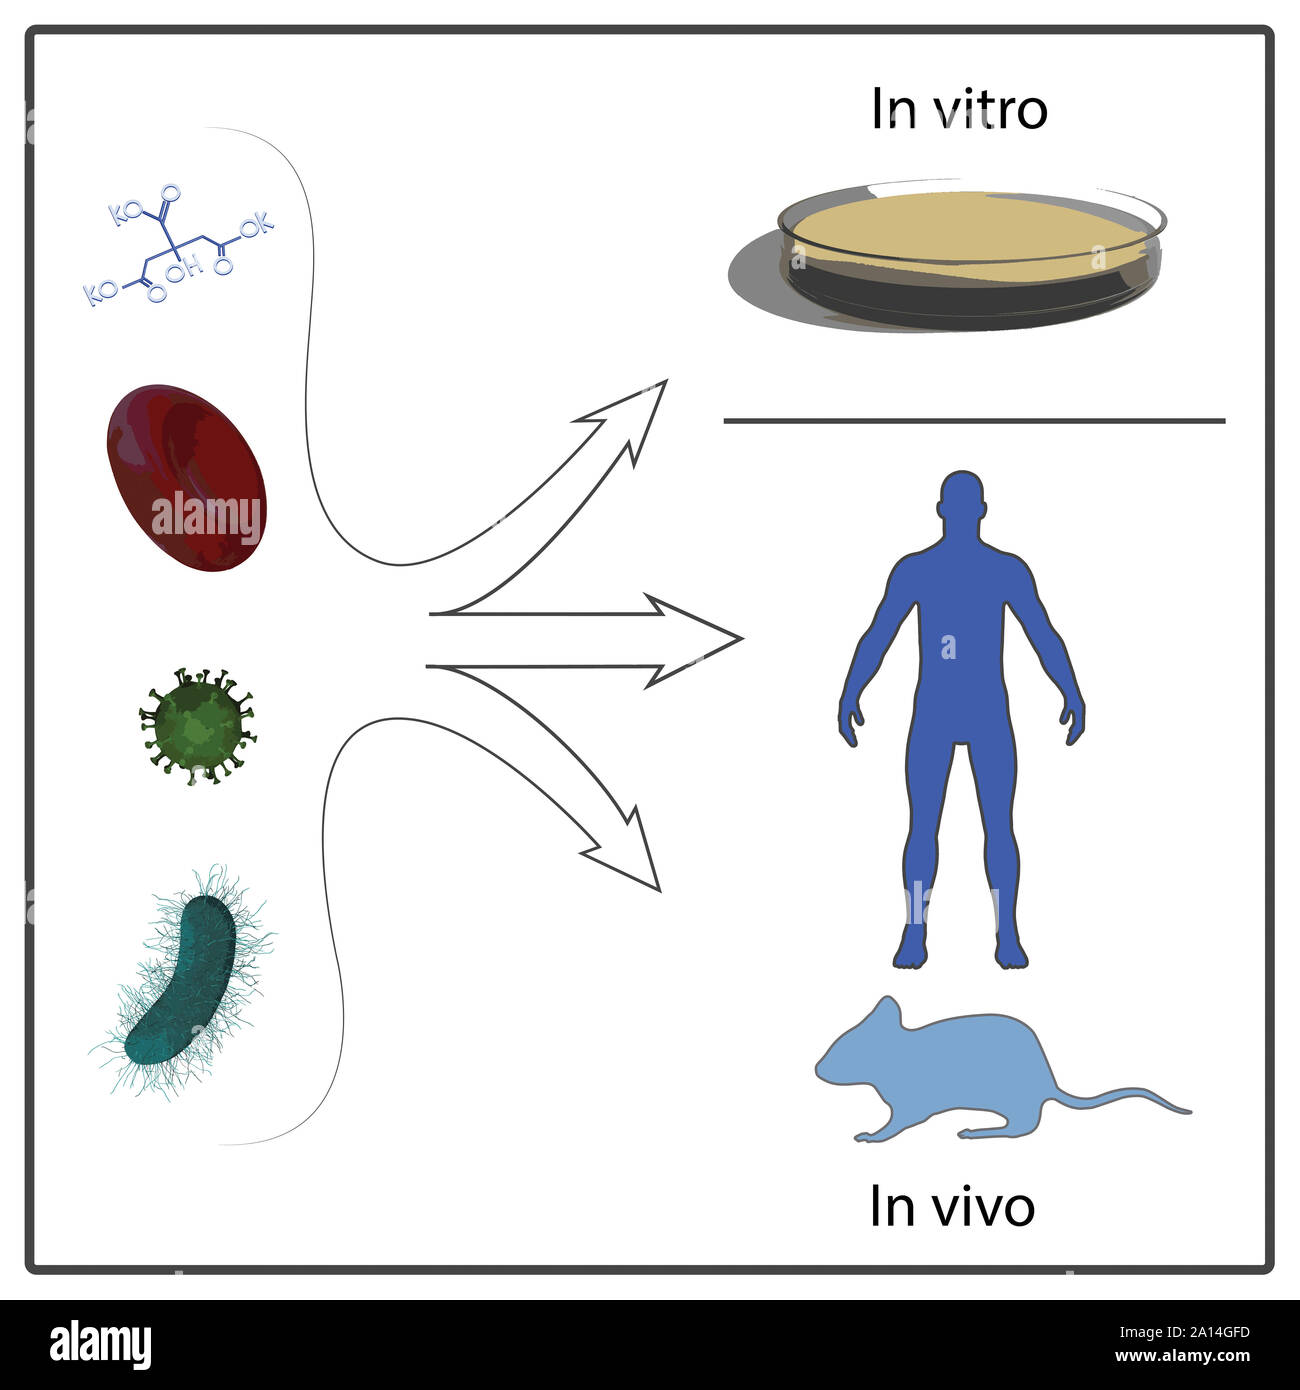 In vitro и in vivo. Исследования in vivo и in vitro. In vivo и in vitro что это такое. In vivo и in vitro что это такое в фармакологии. Метод in vivo in vitro.